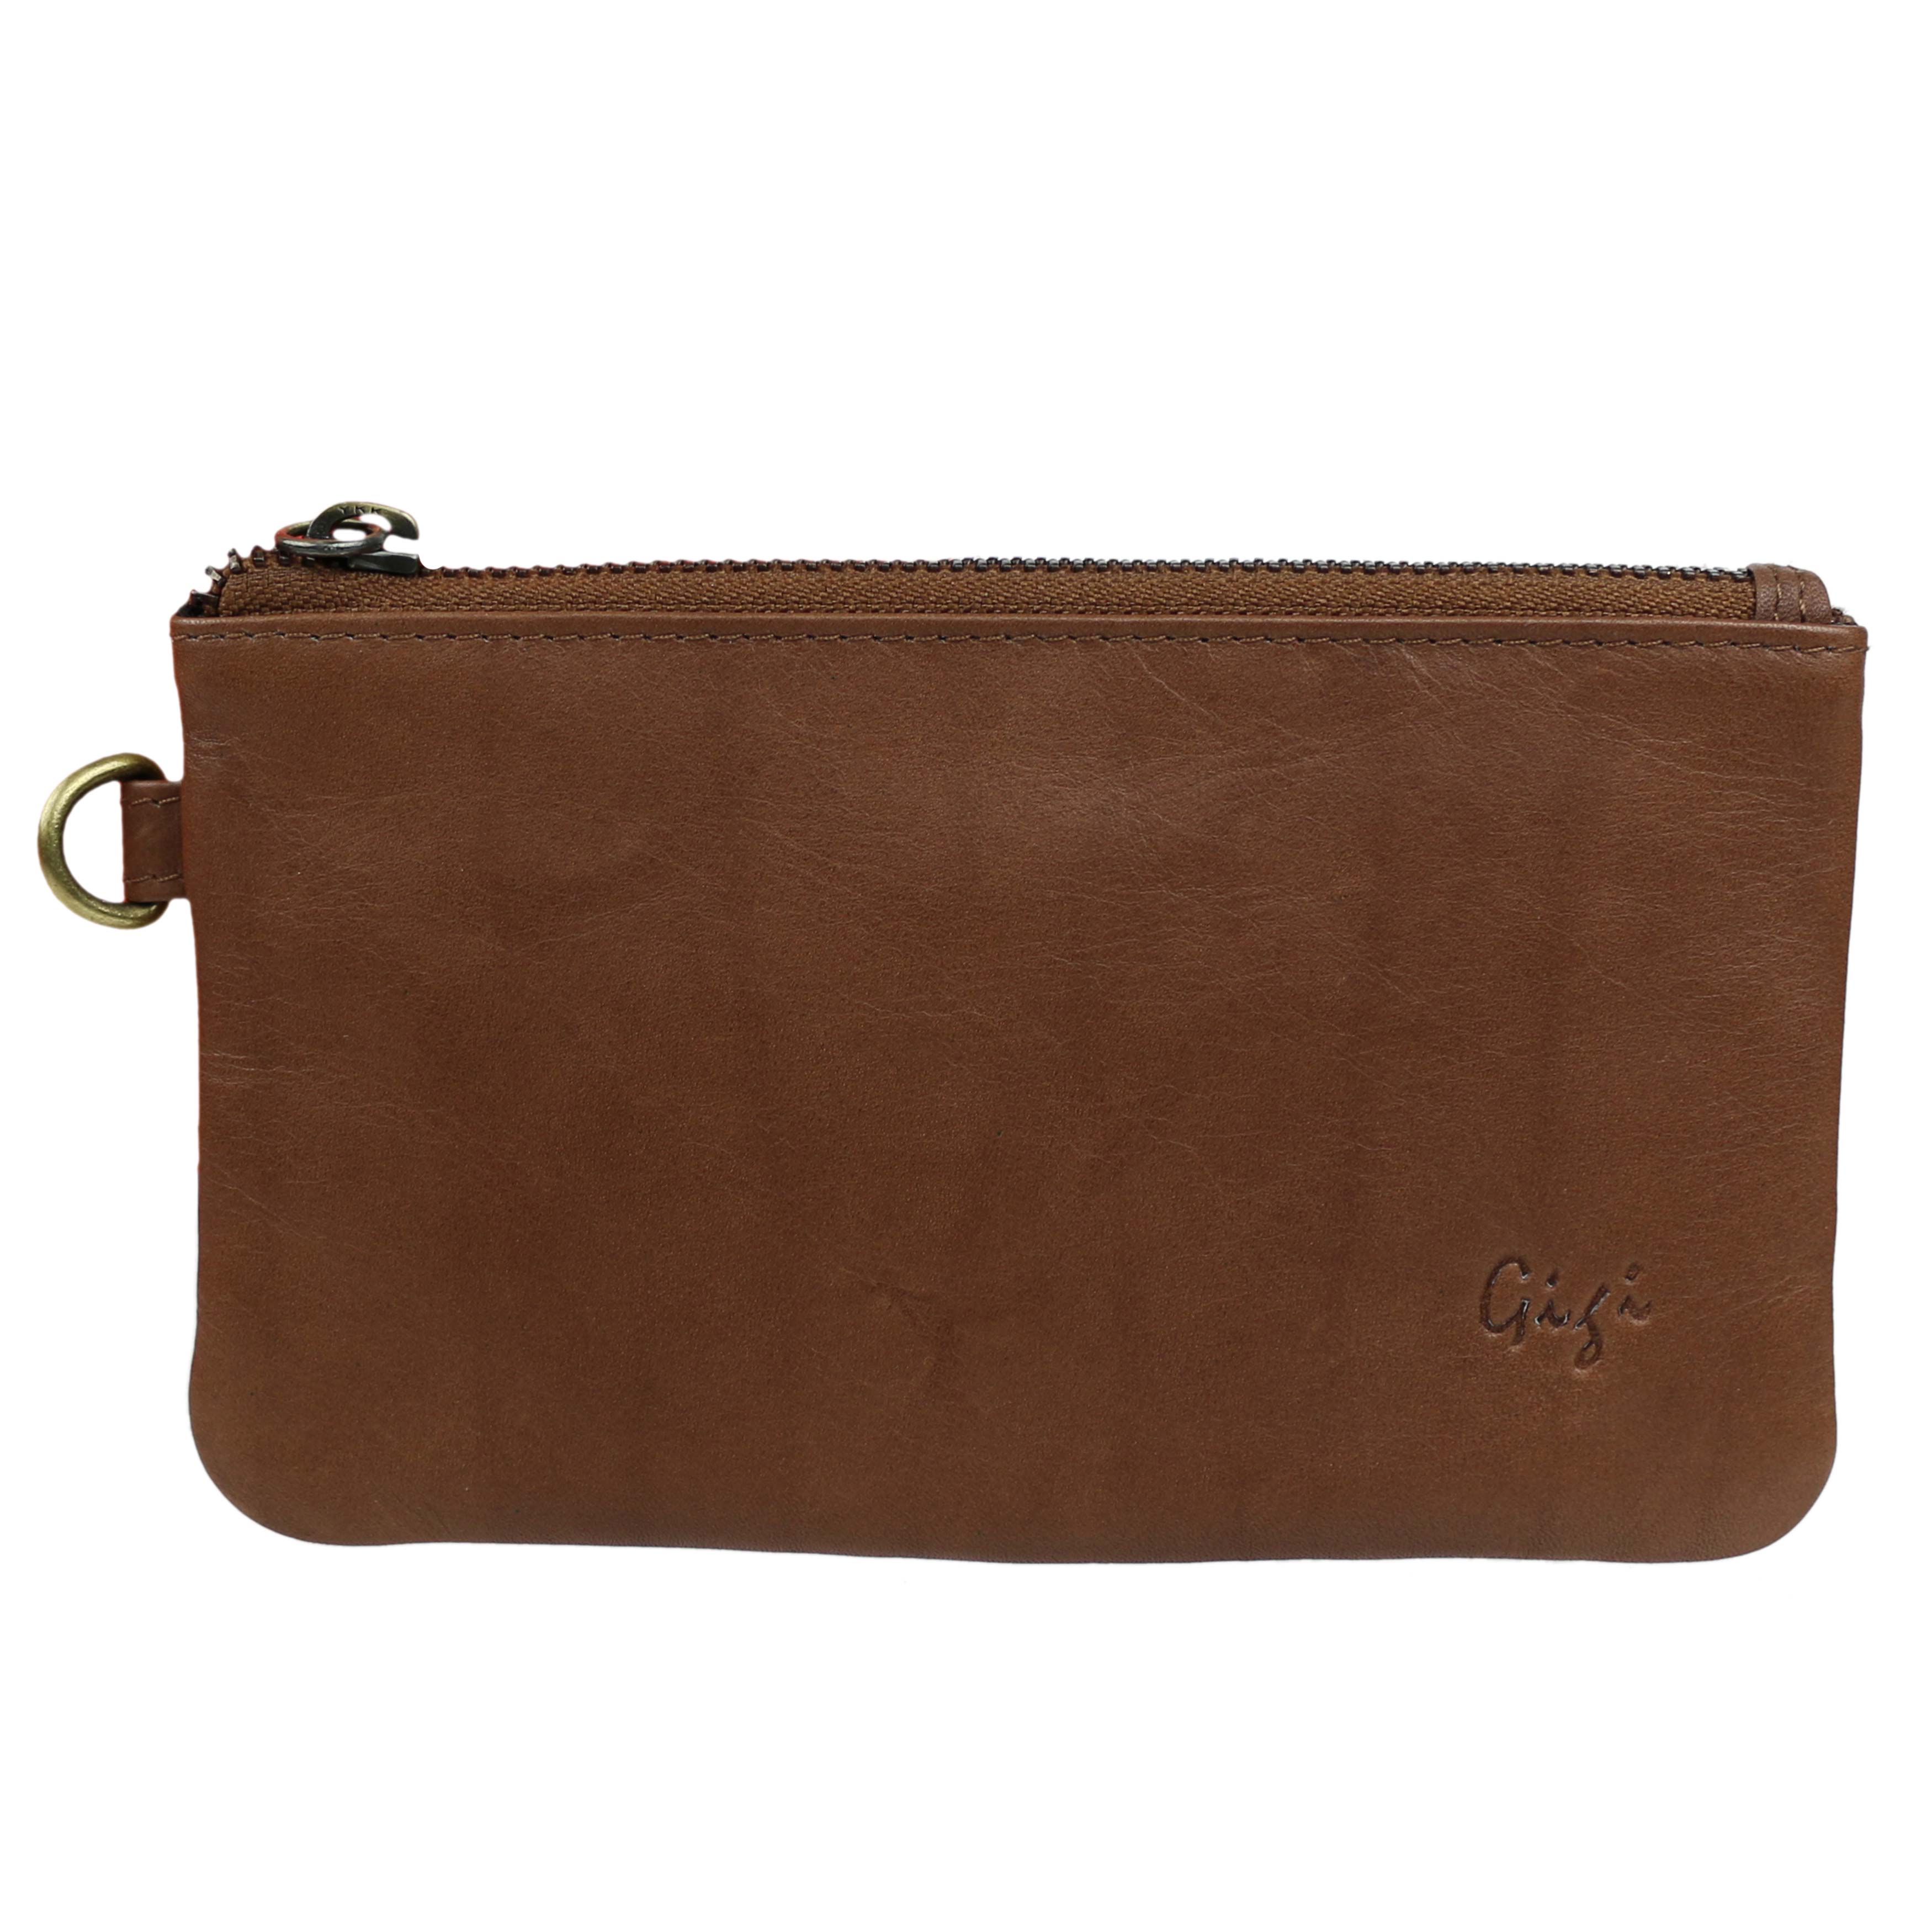 Ladies Leather Wrist Bag/ Clutch Purse by GiGi Leather | eBay